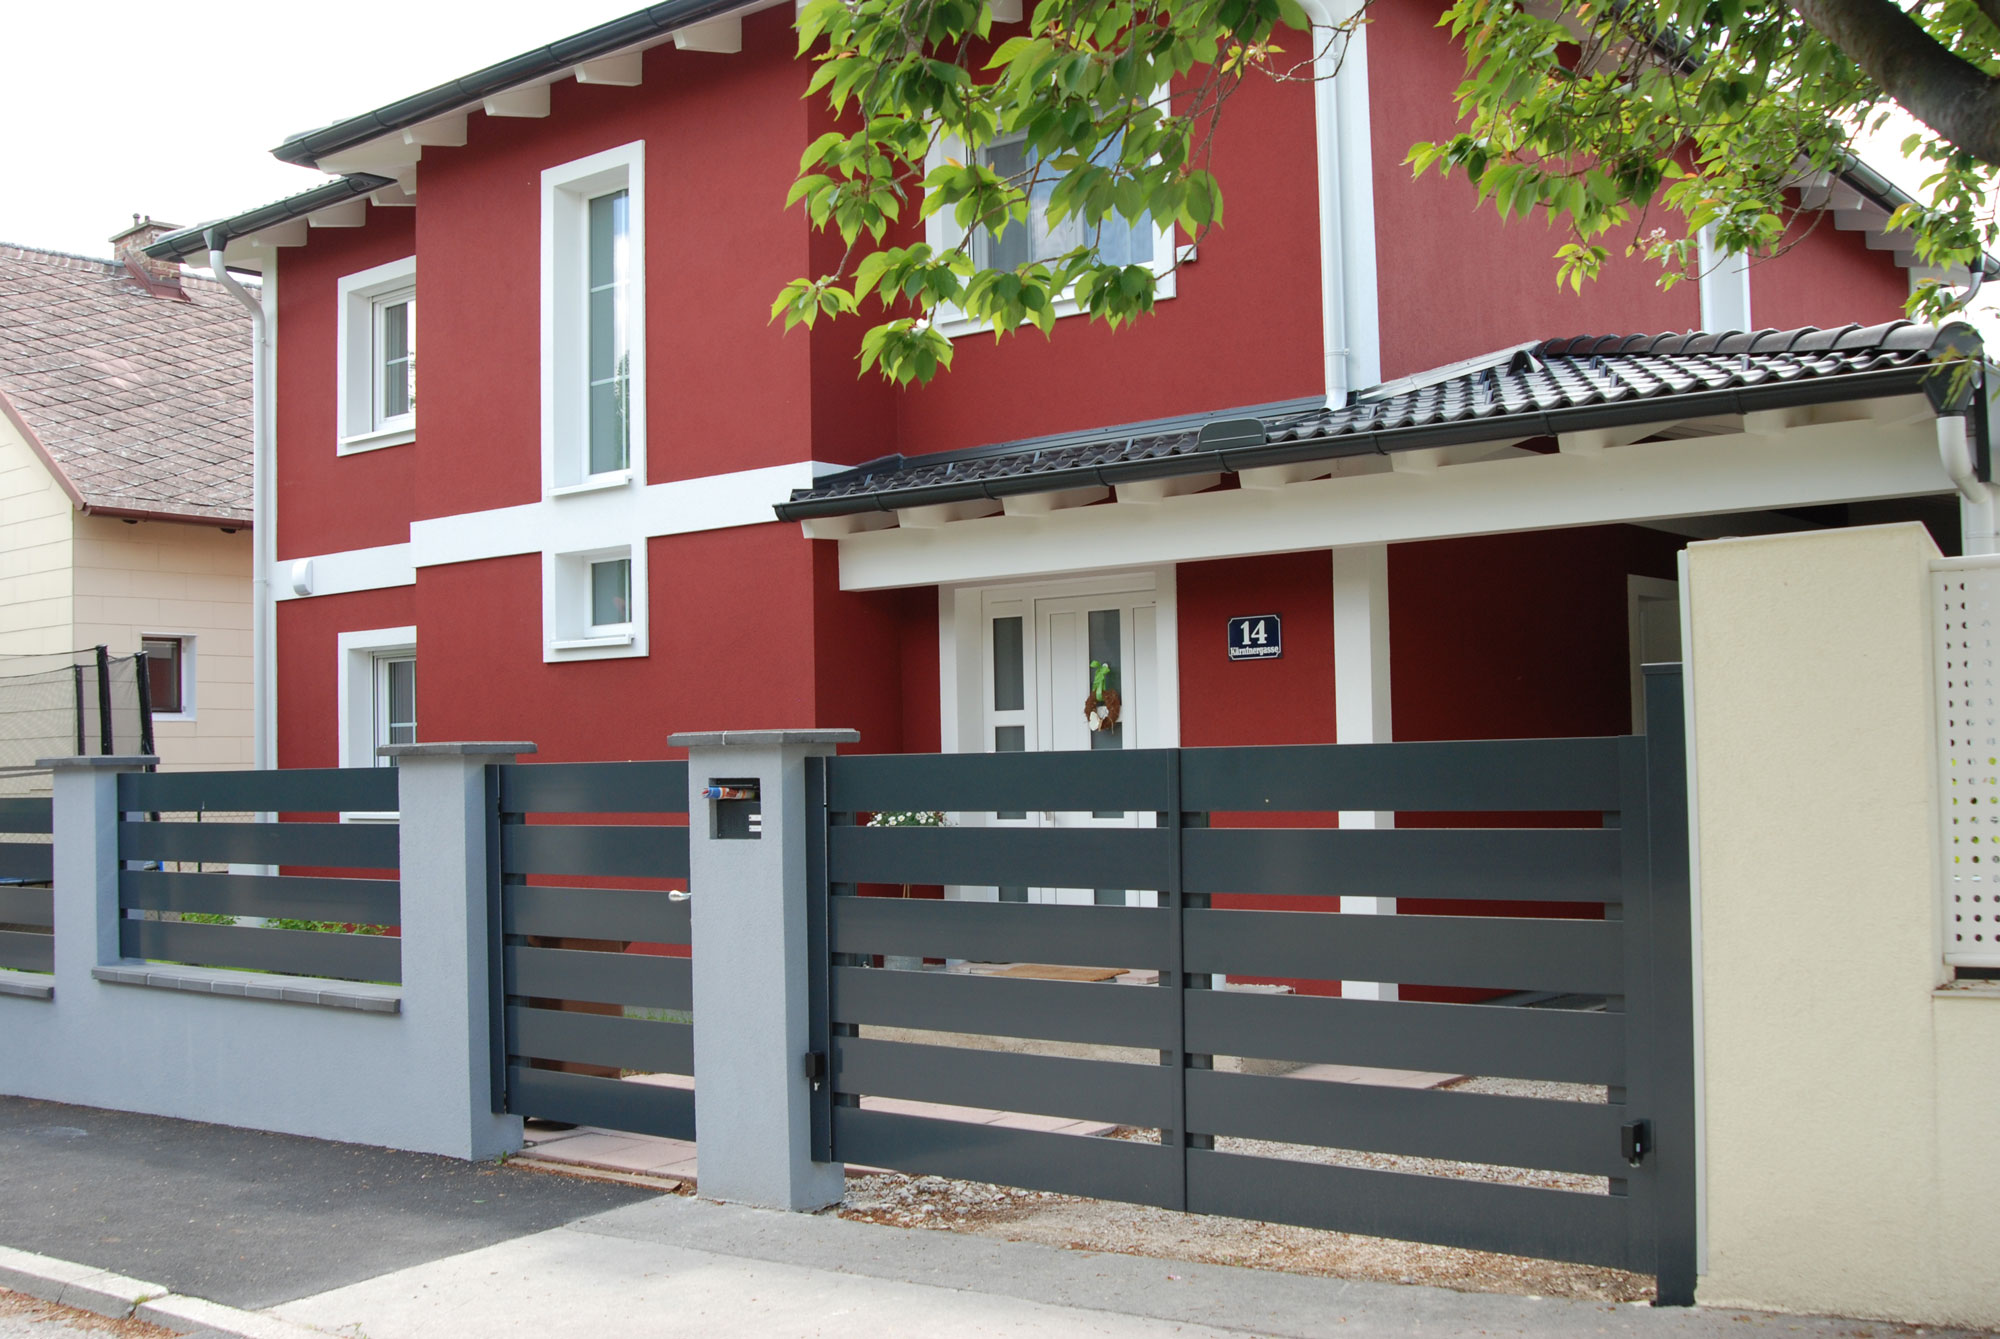 Moderner Gartenzaun mit Flügeltor und Gehtüre mit Querlatten aus Aluminium begrenzt ein Grundstück vor einem roten Haus